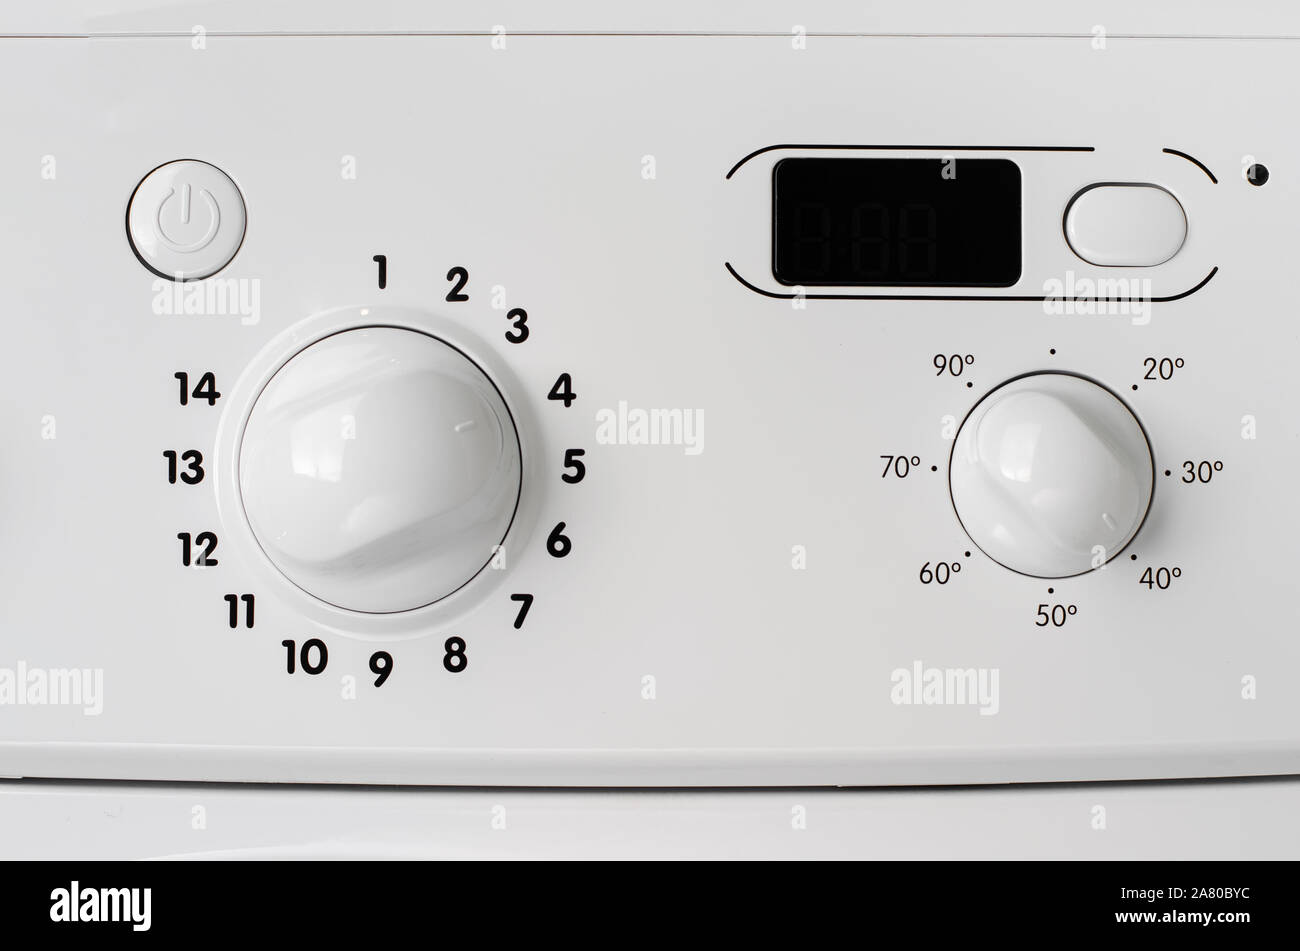 Haushaltsgeräte Konzept. Ein Teil der Waschmaschine Control Panel. Programm Auswahl und Temperatur Regler. Stockfoto